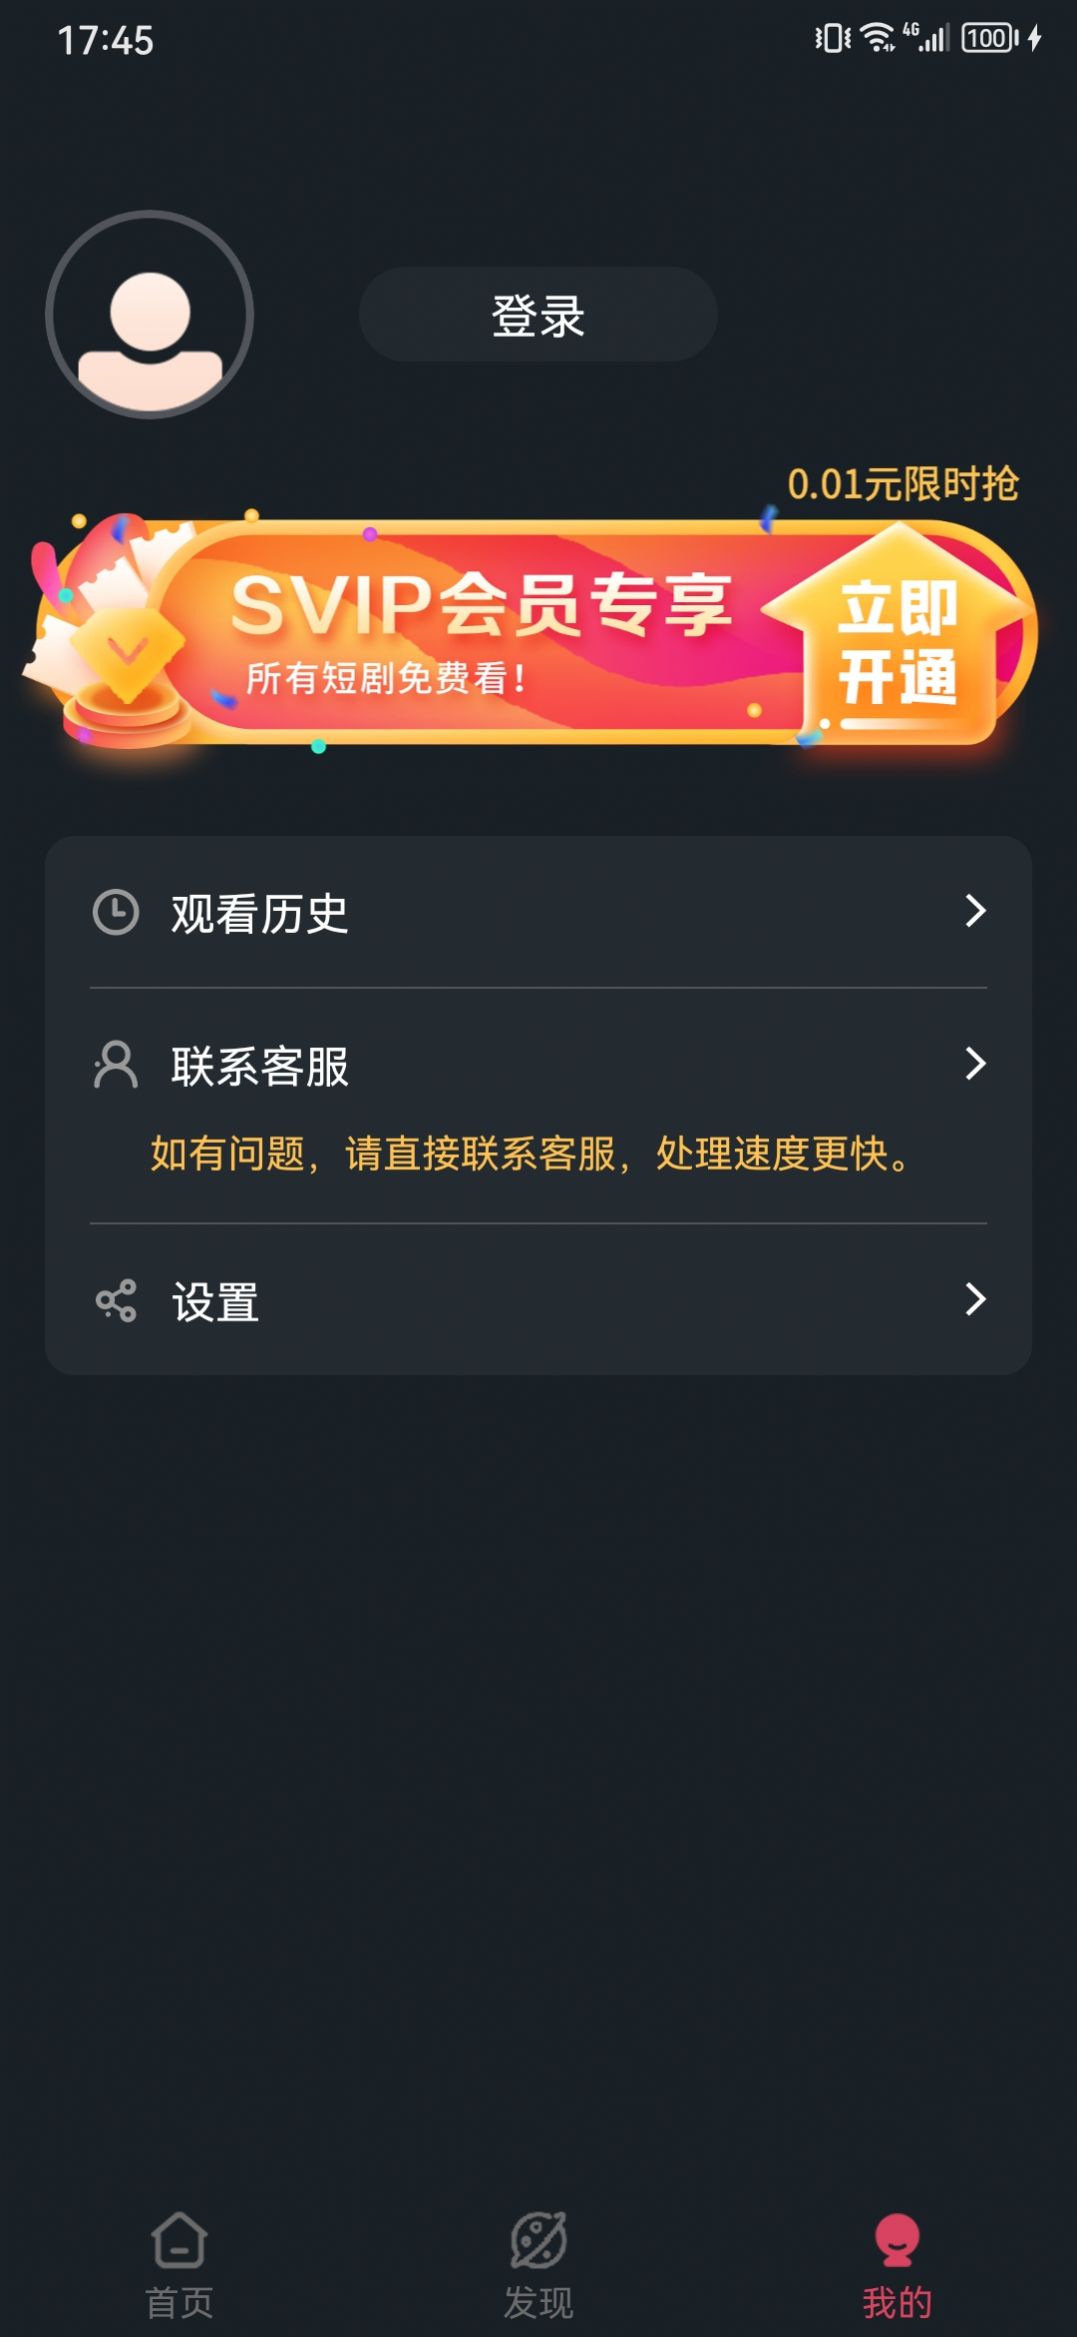 微视大全免费短剧手机版app官方下载图片1